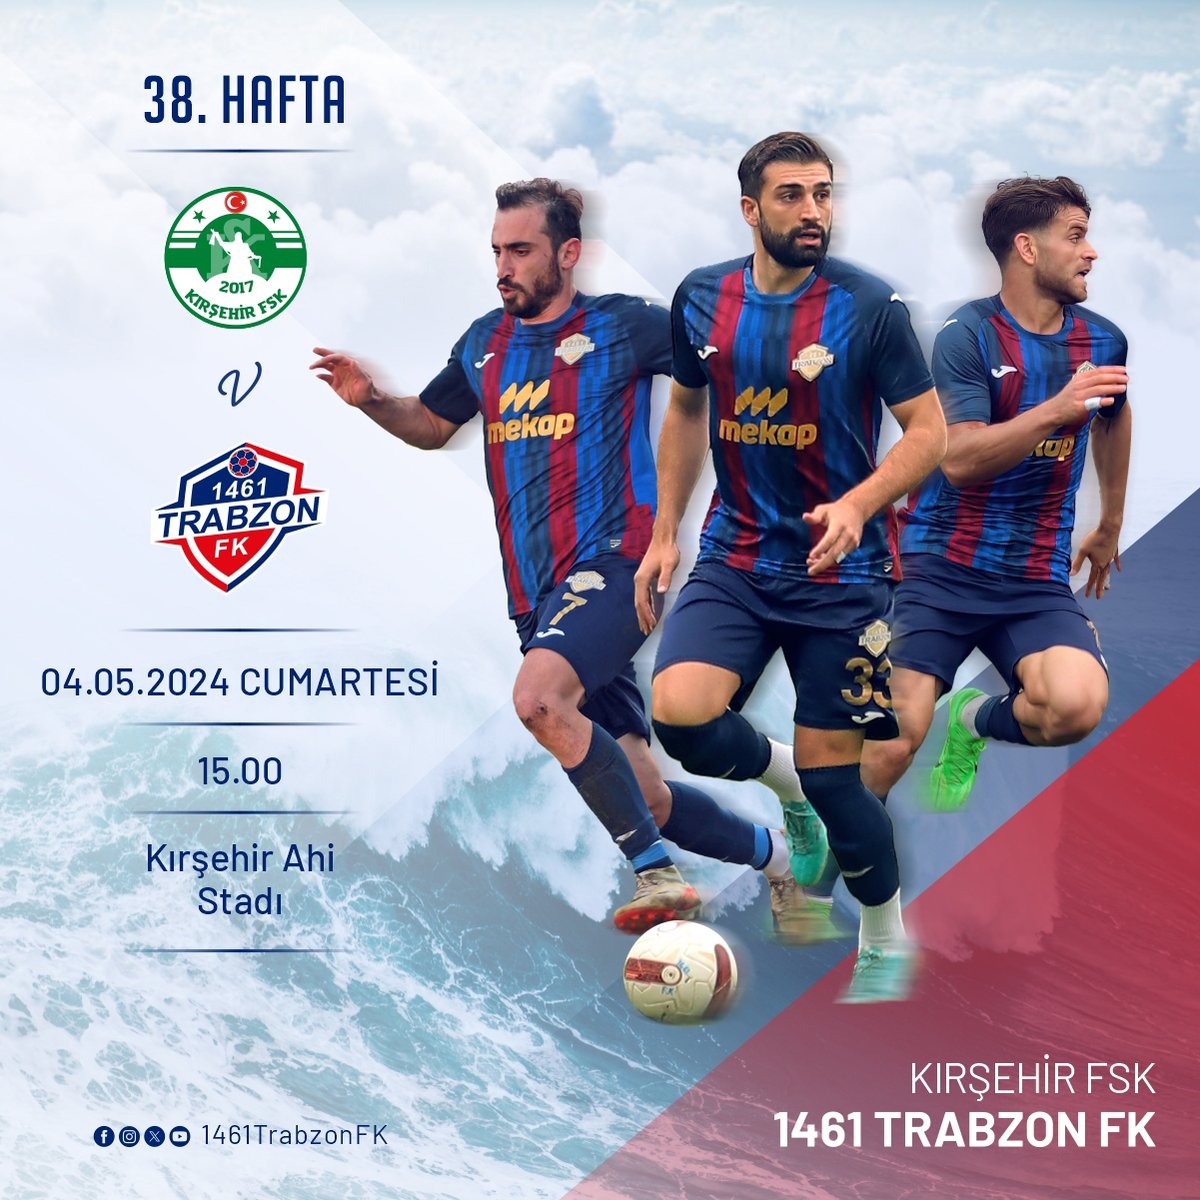 🔥BUGÜN GÜNLERDEN 1461 TRABZON FK 🏆TFF 2.Lig Beyaz Grup 38. Hafta ⚽Kırşehir FSK - 1461 Trabzon FK 🗓04.05.2024 🏟Ahi Stadı ⏰15:00 📺Yayın yok